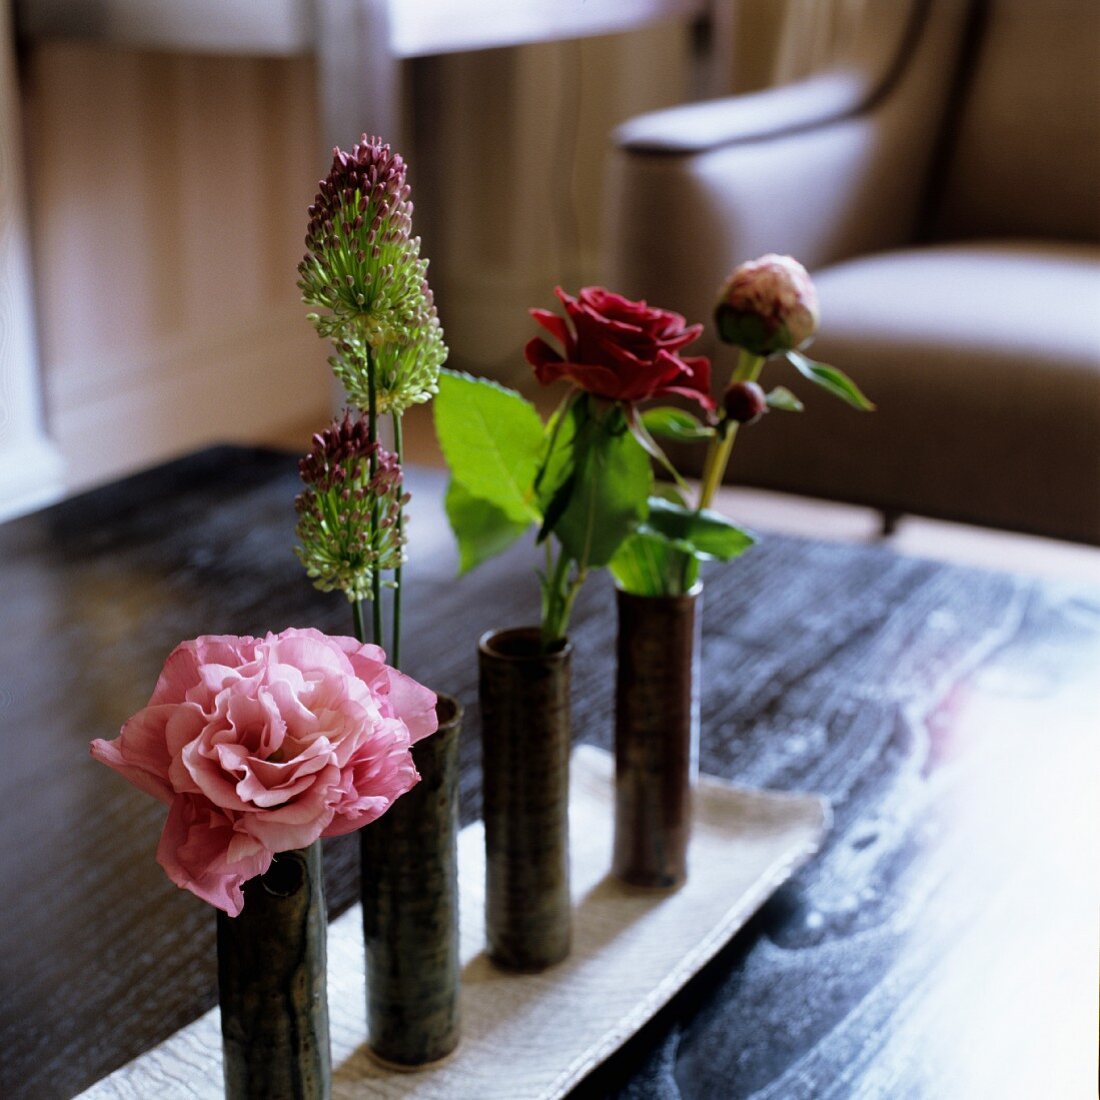 Schmale zylinderförmige Vasen mit einzelnen Blumen auf Schale und Sessel im Hintergrund